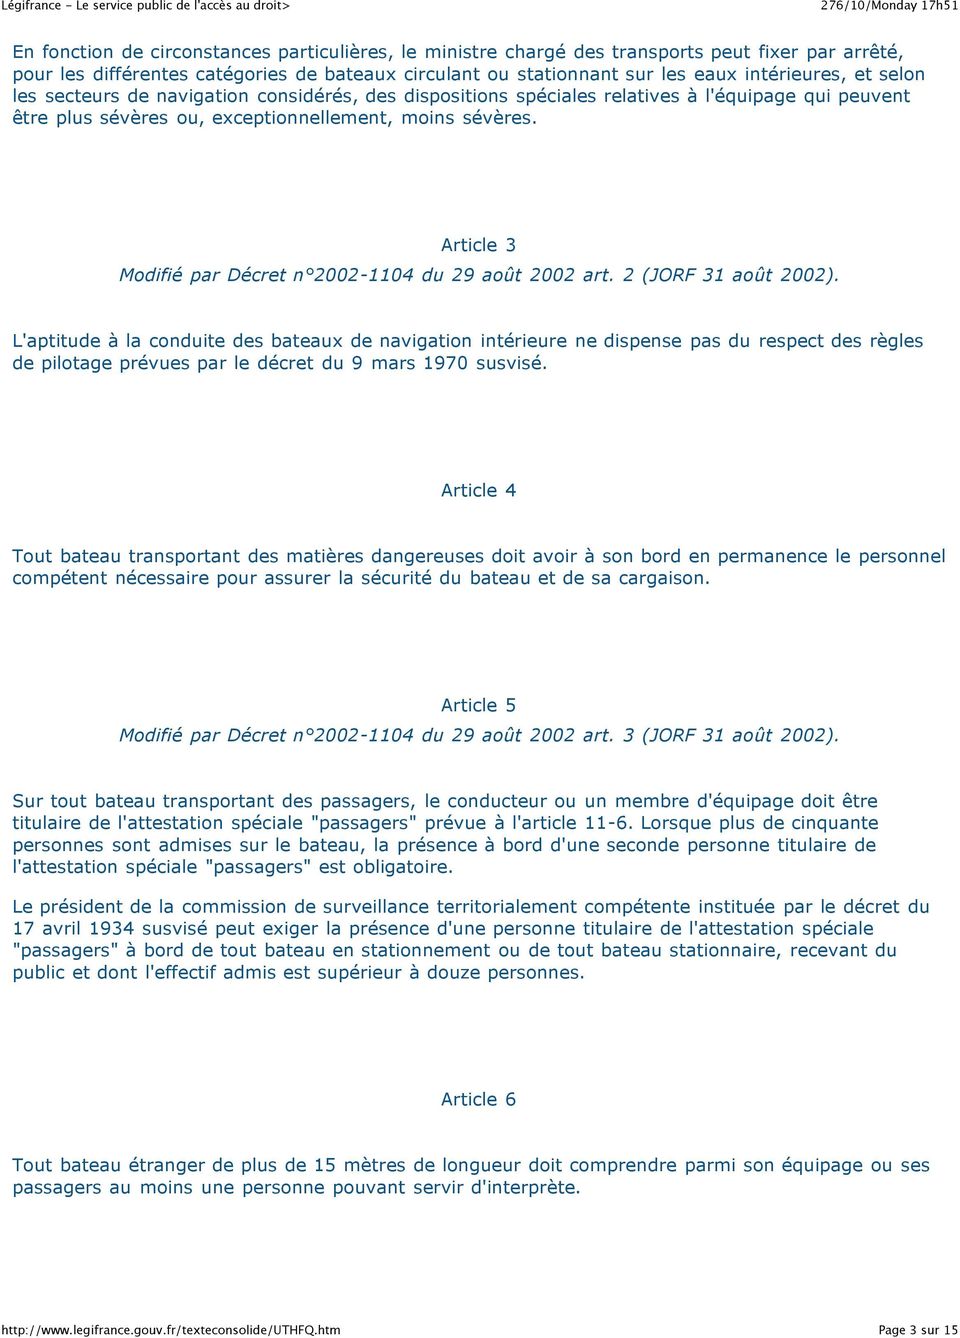 Article 3 Modifié par Décret n 2002-1104 du 29 août 2002 art. 2 (JORF 31 août 2002).